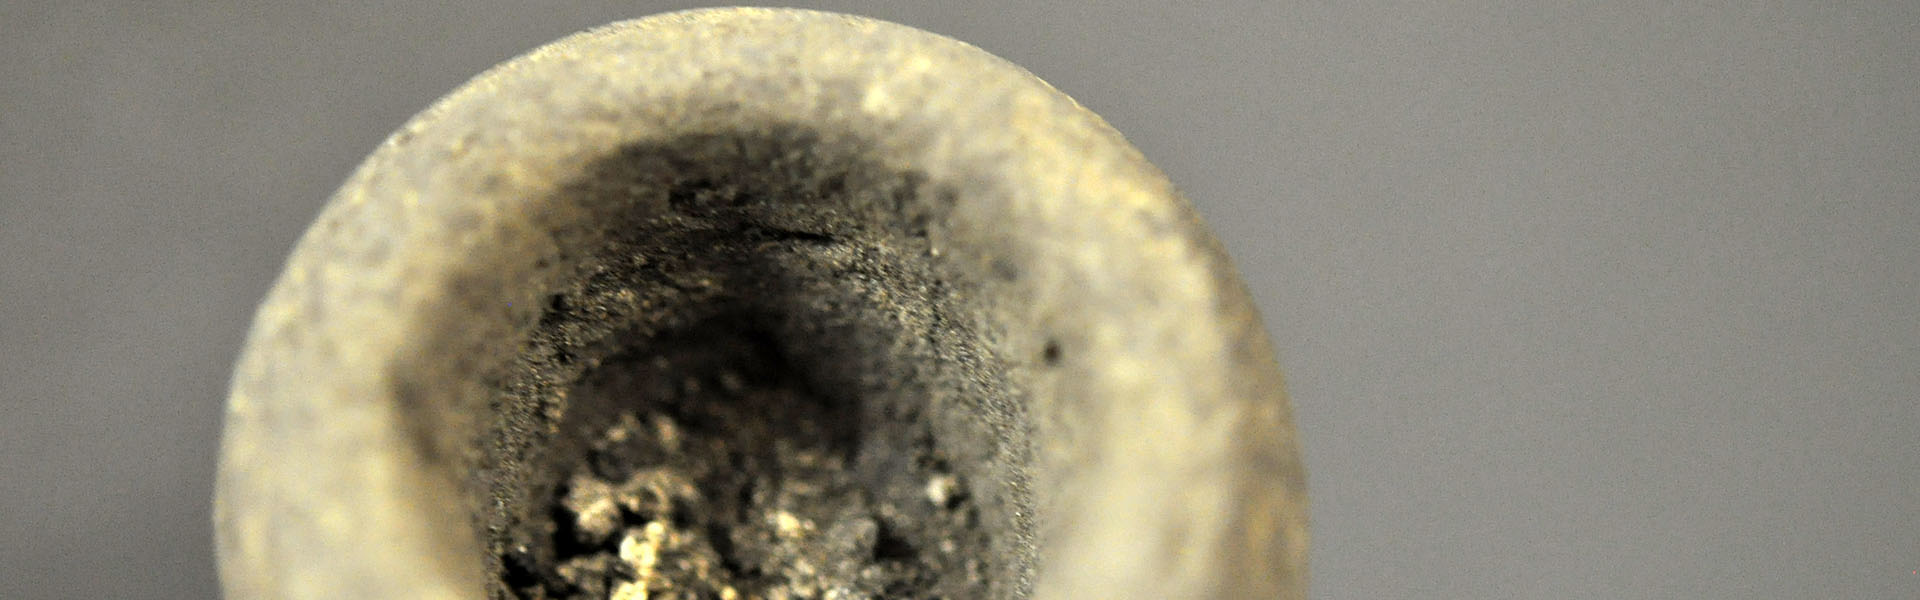 Pipe en argile provient du site archéologique Thomson-Walker, près de Moonstone (2015)